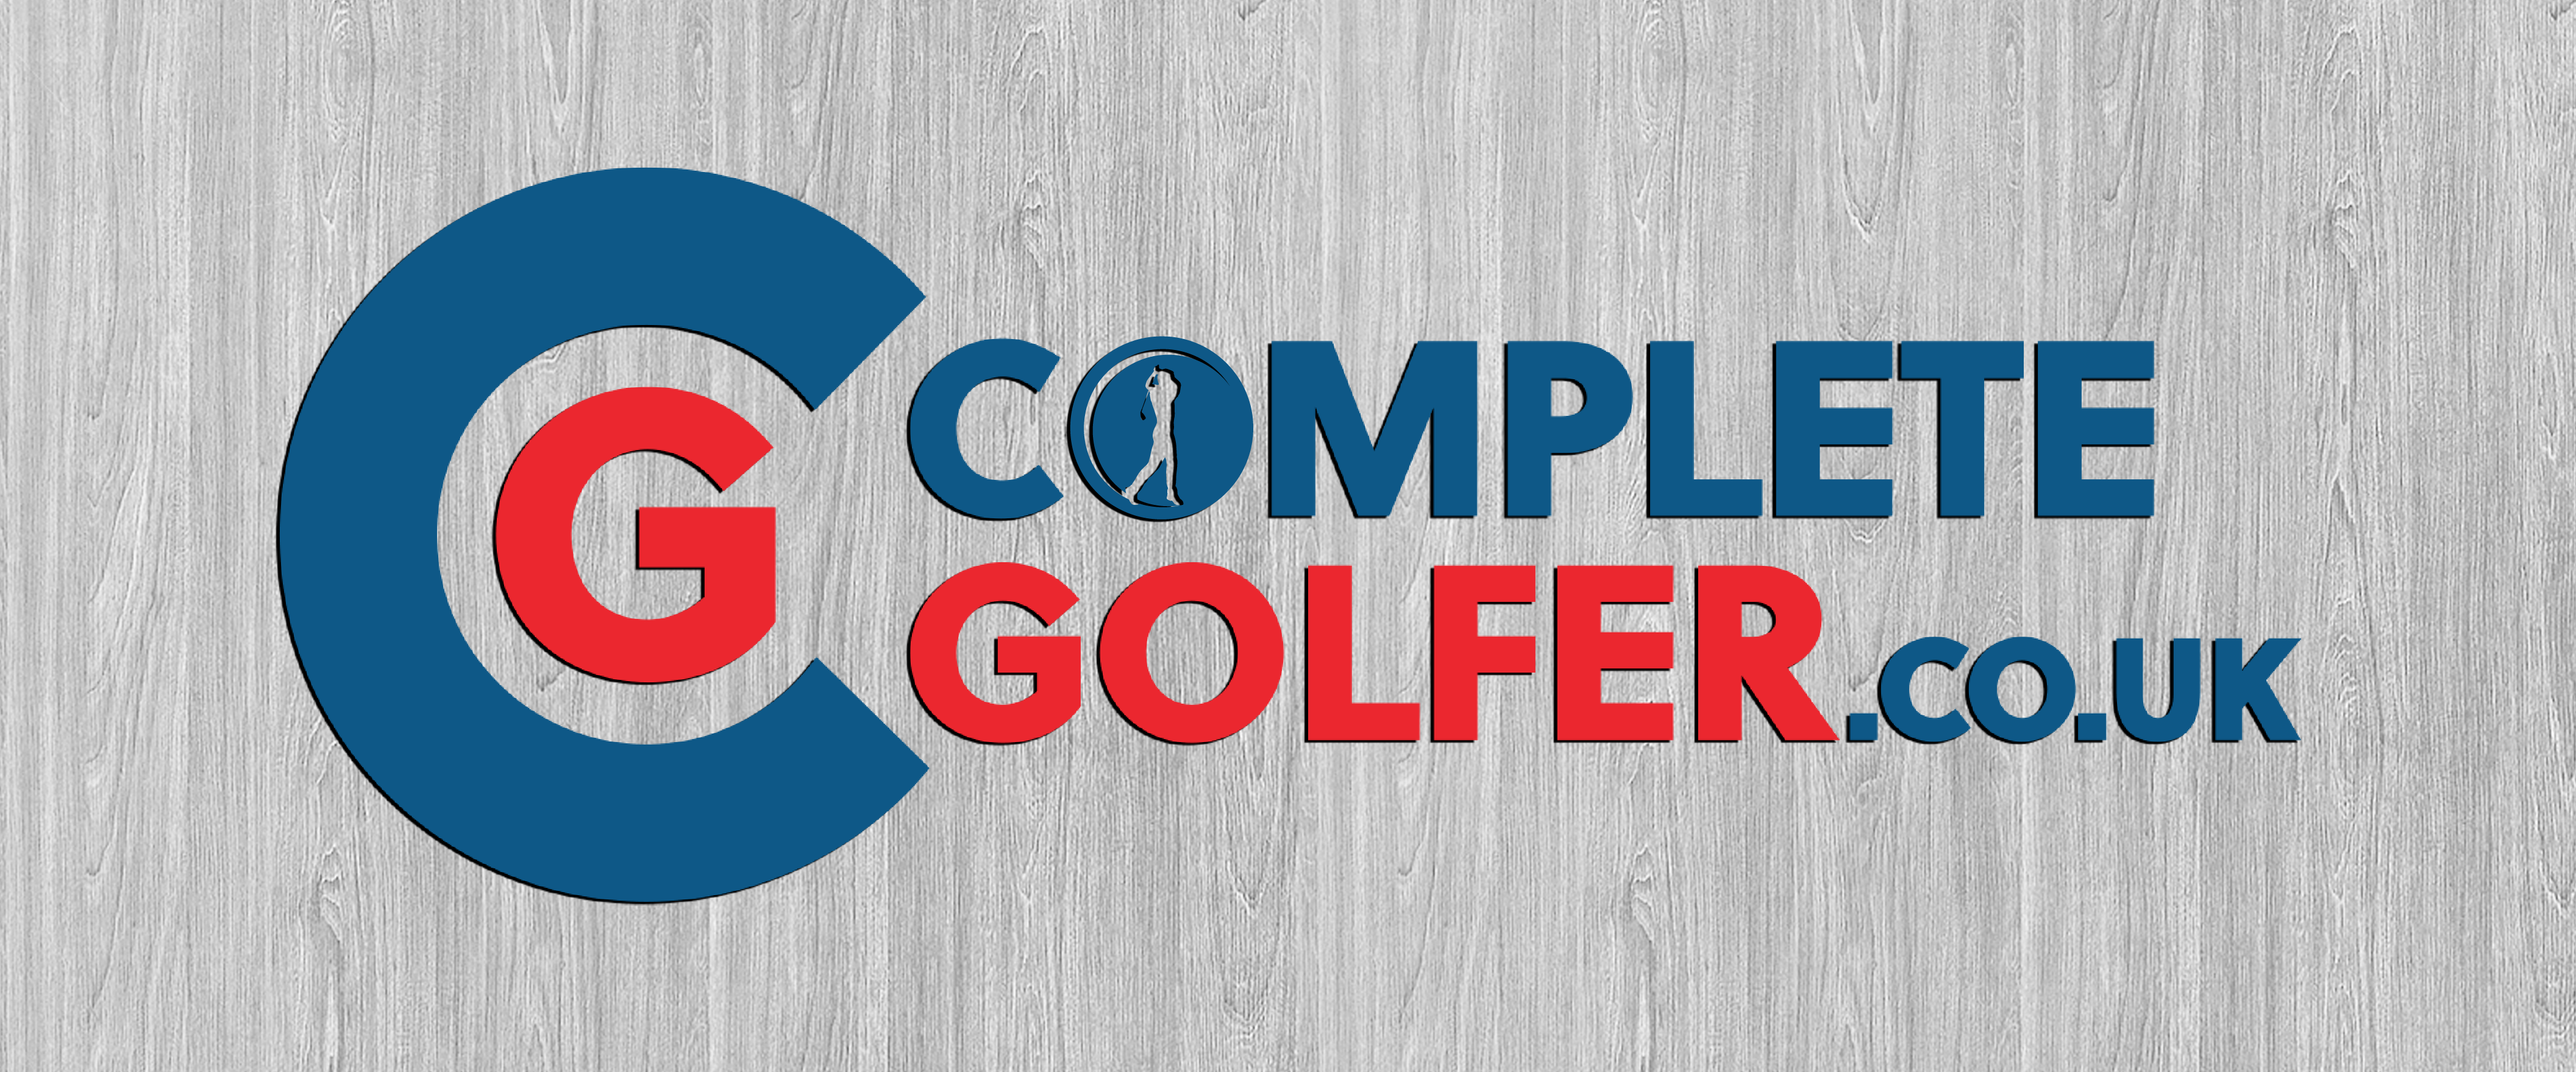 Complete Golfer Golf Shop